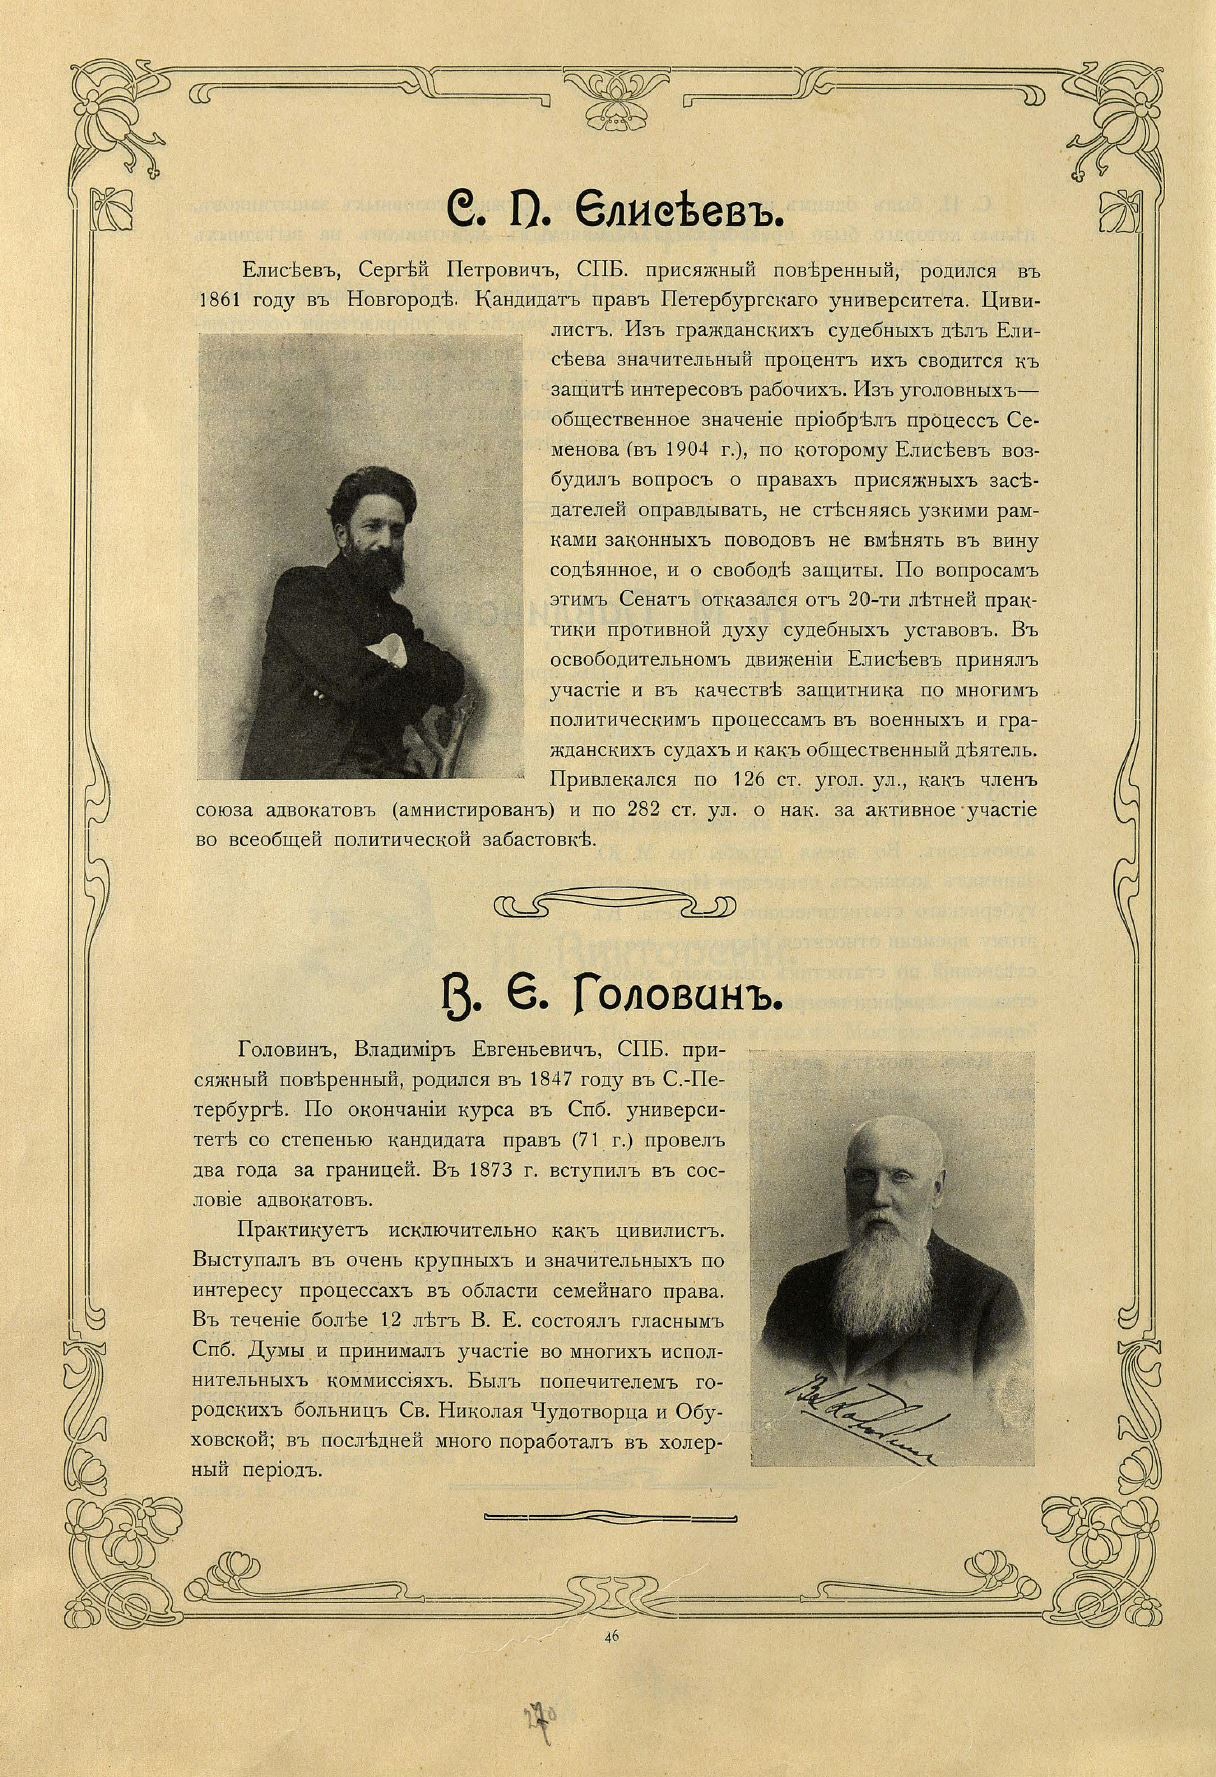 Страница 270 справочника Деятели России 1906 год.JPG